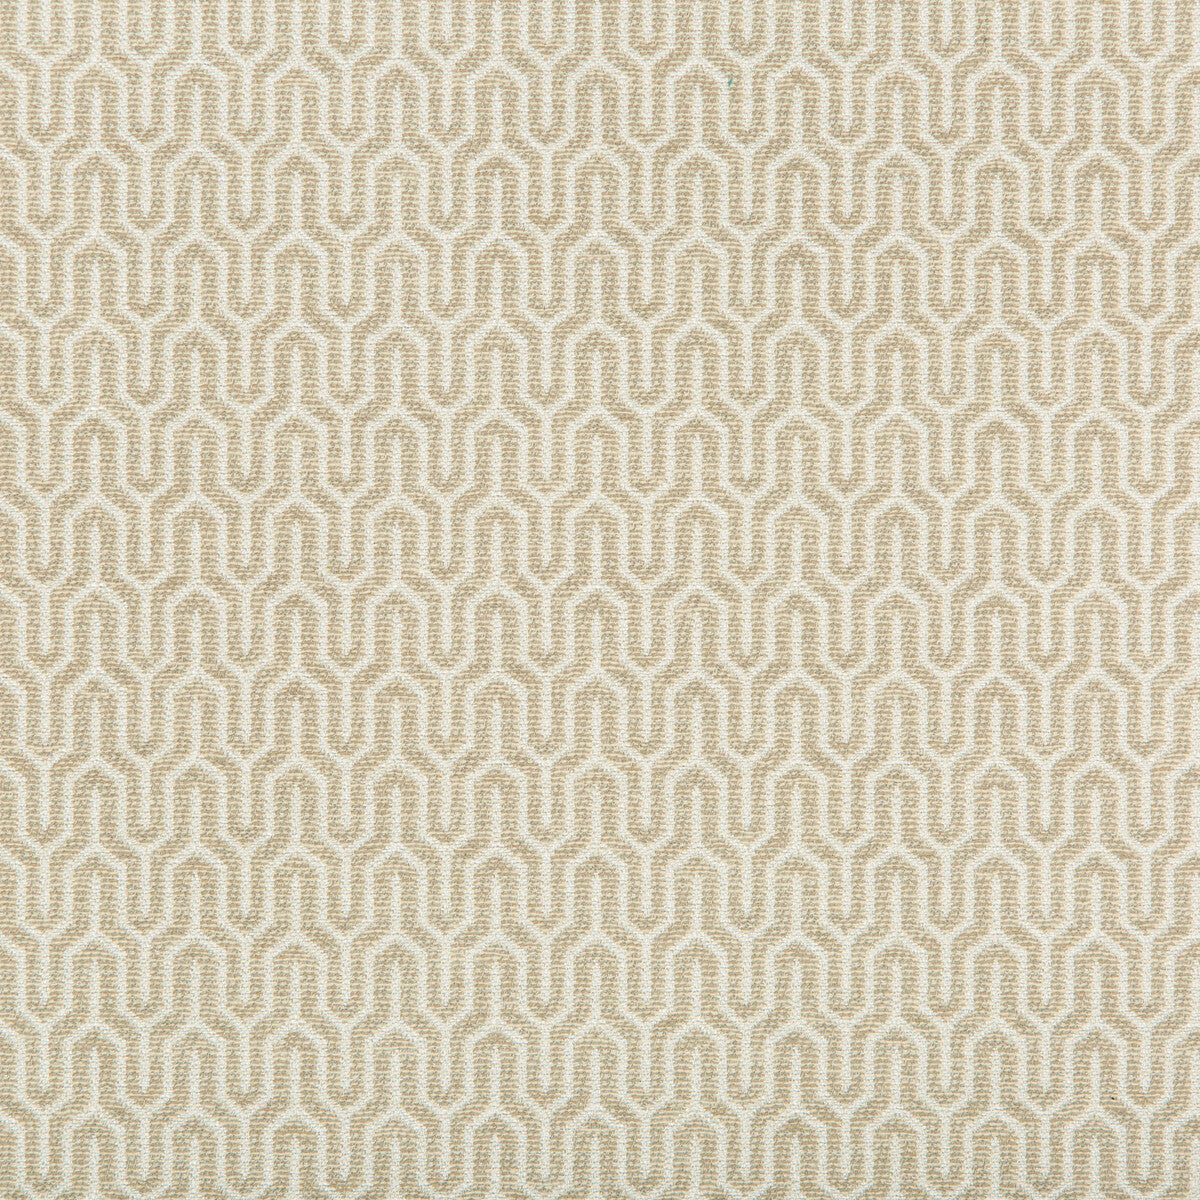 Kravet Design fabric in 35637-16 color - pattern 35637.16.0 - by Kravet Design